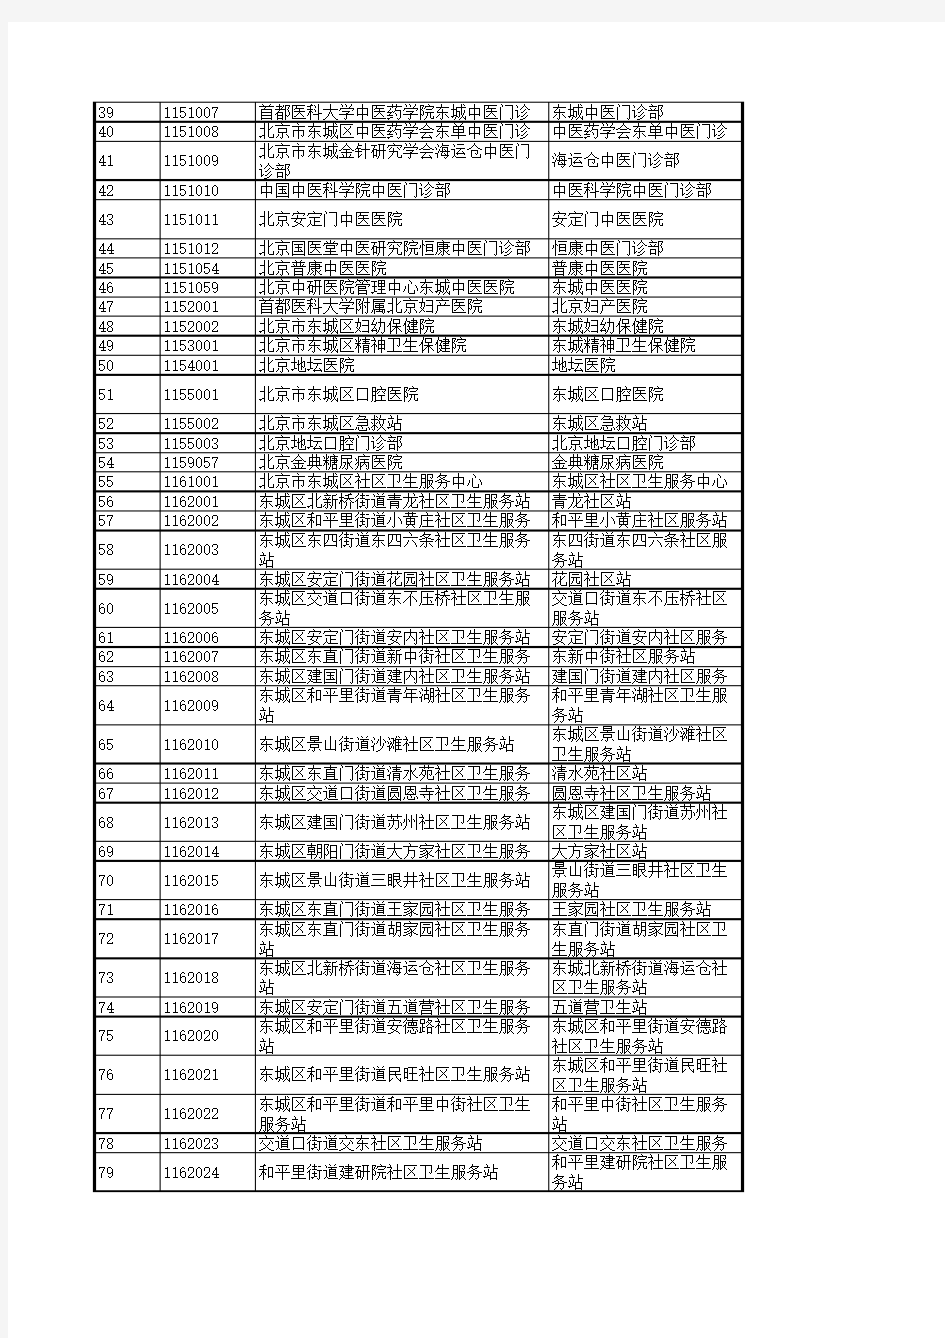 北京市定点医疗机构名单-共2016家包括代码及地址